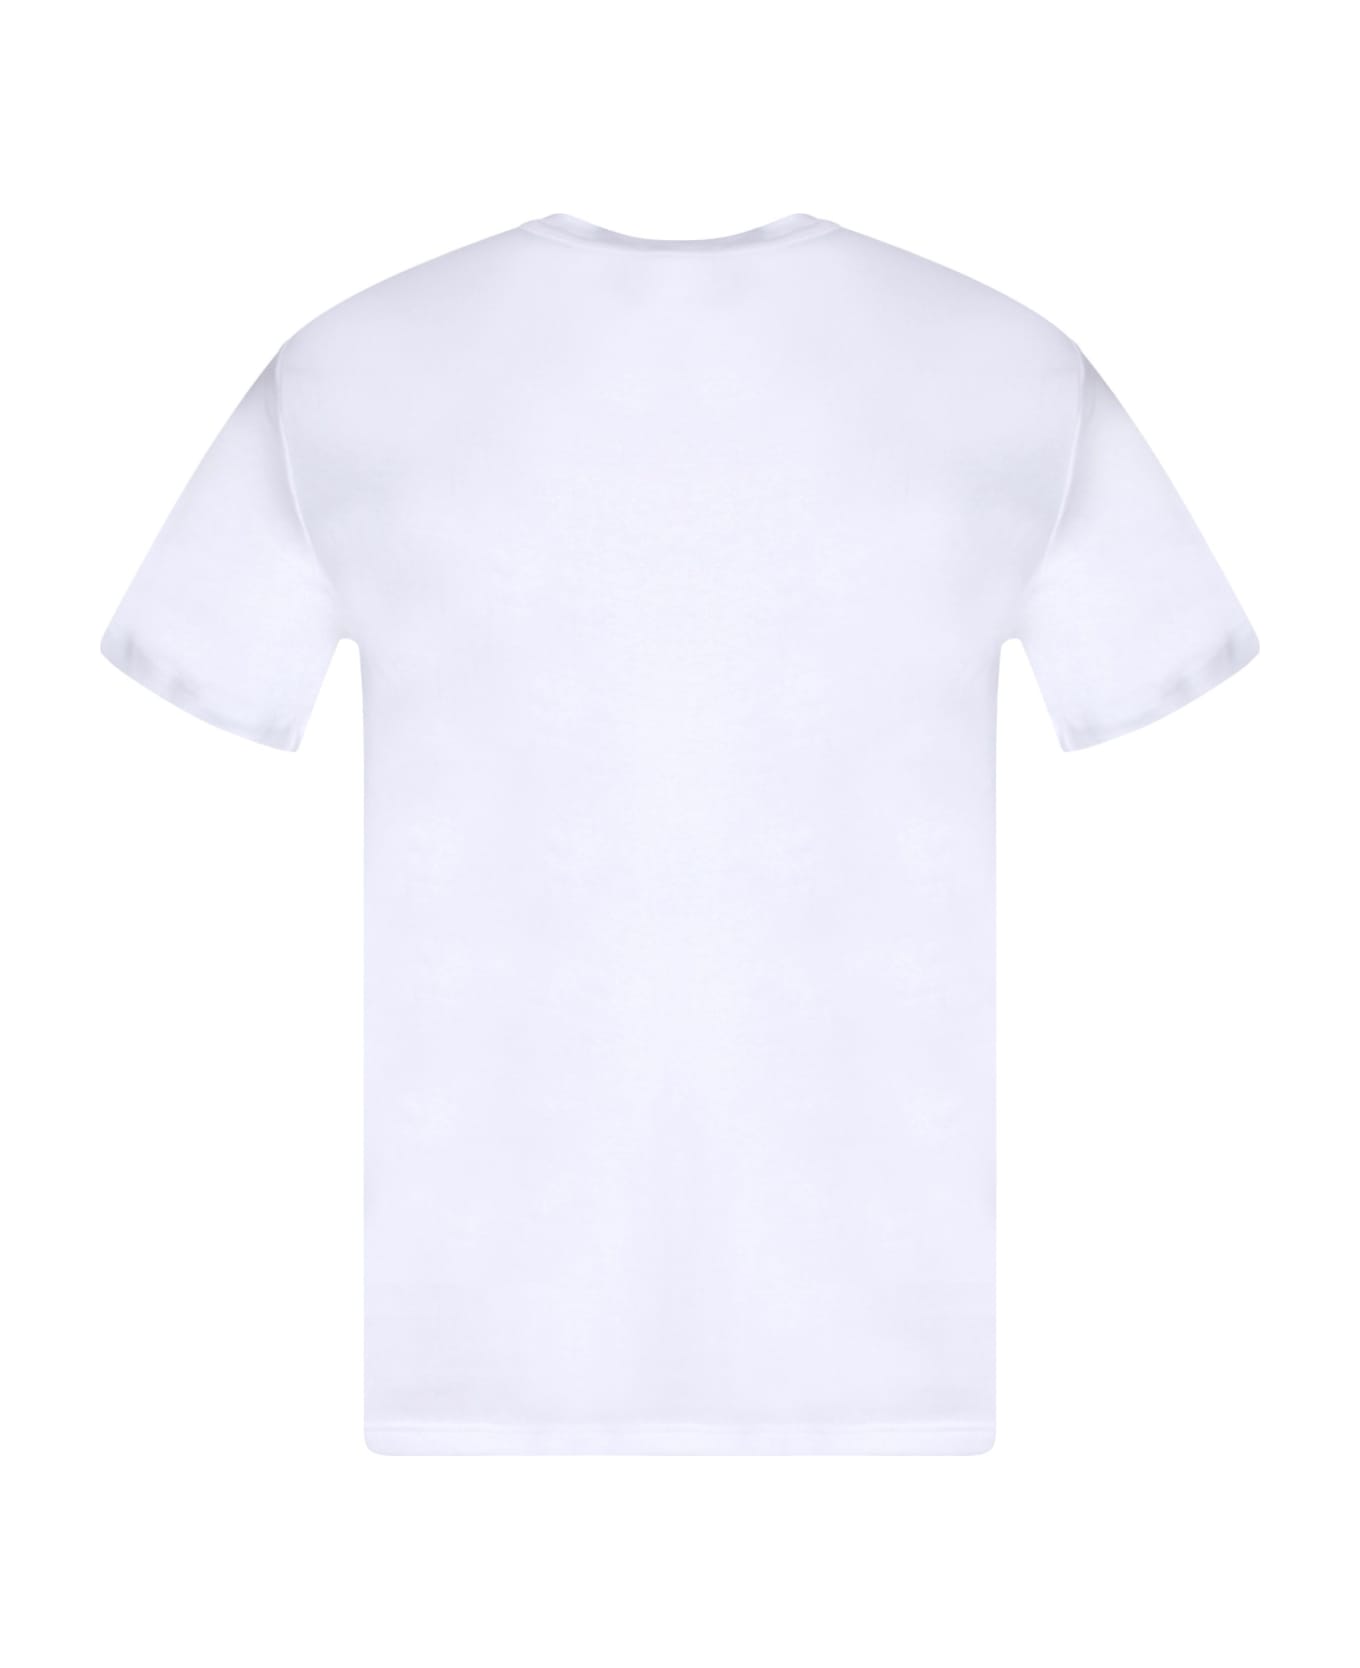 Tom Ford White Stretch Cotton T-shirt - White